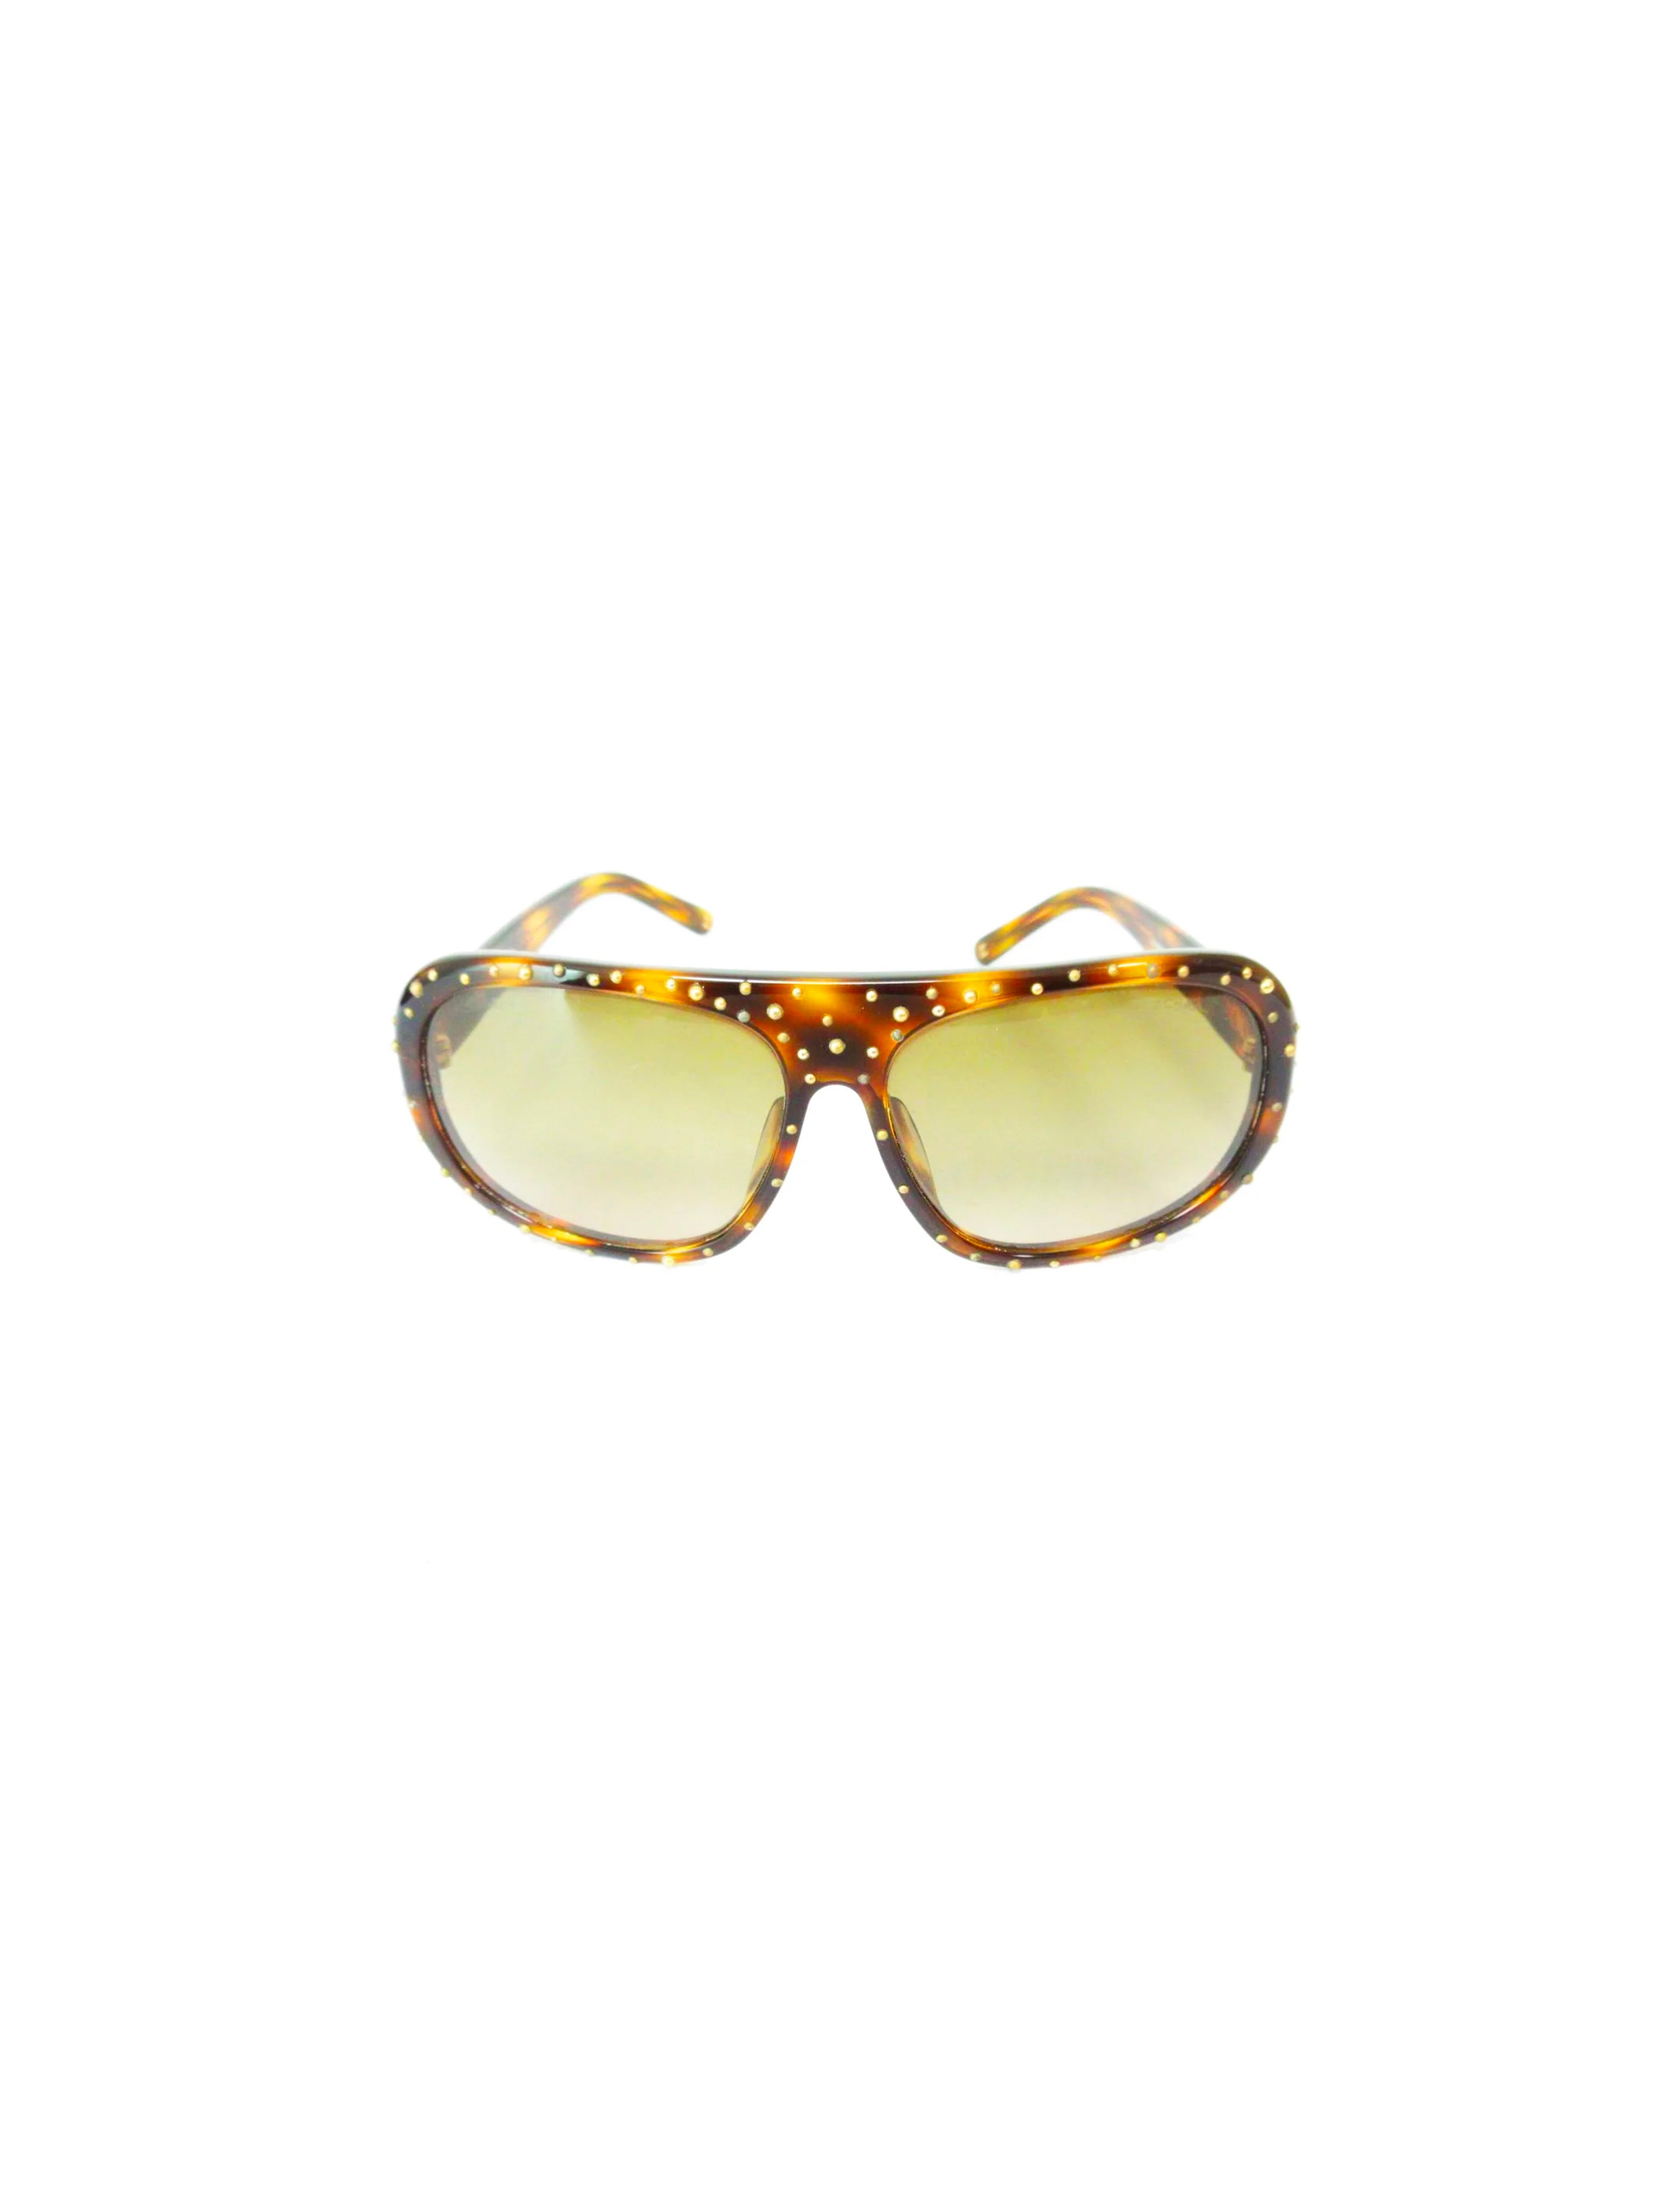 Chanel Speckled Rare Aviator Sunglasses · INTO